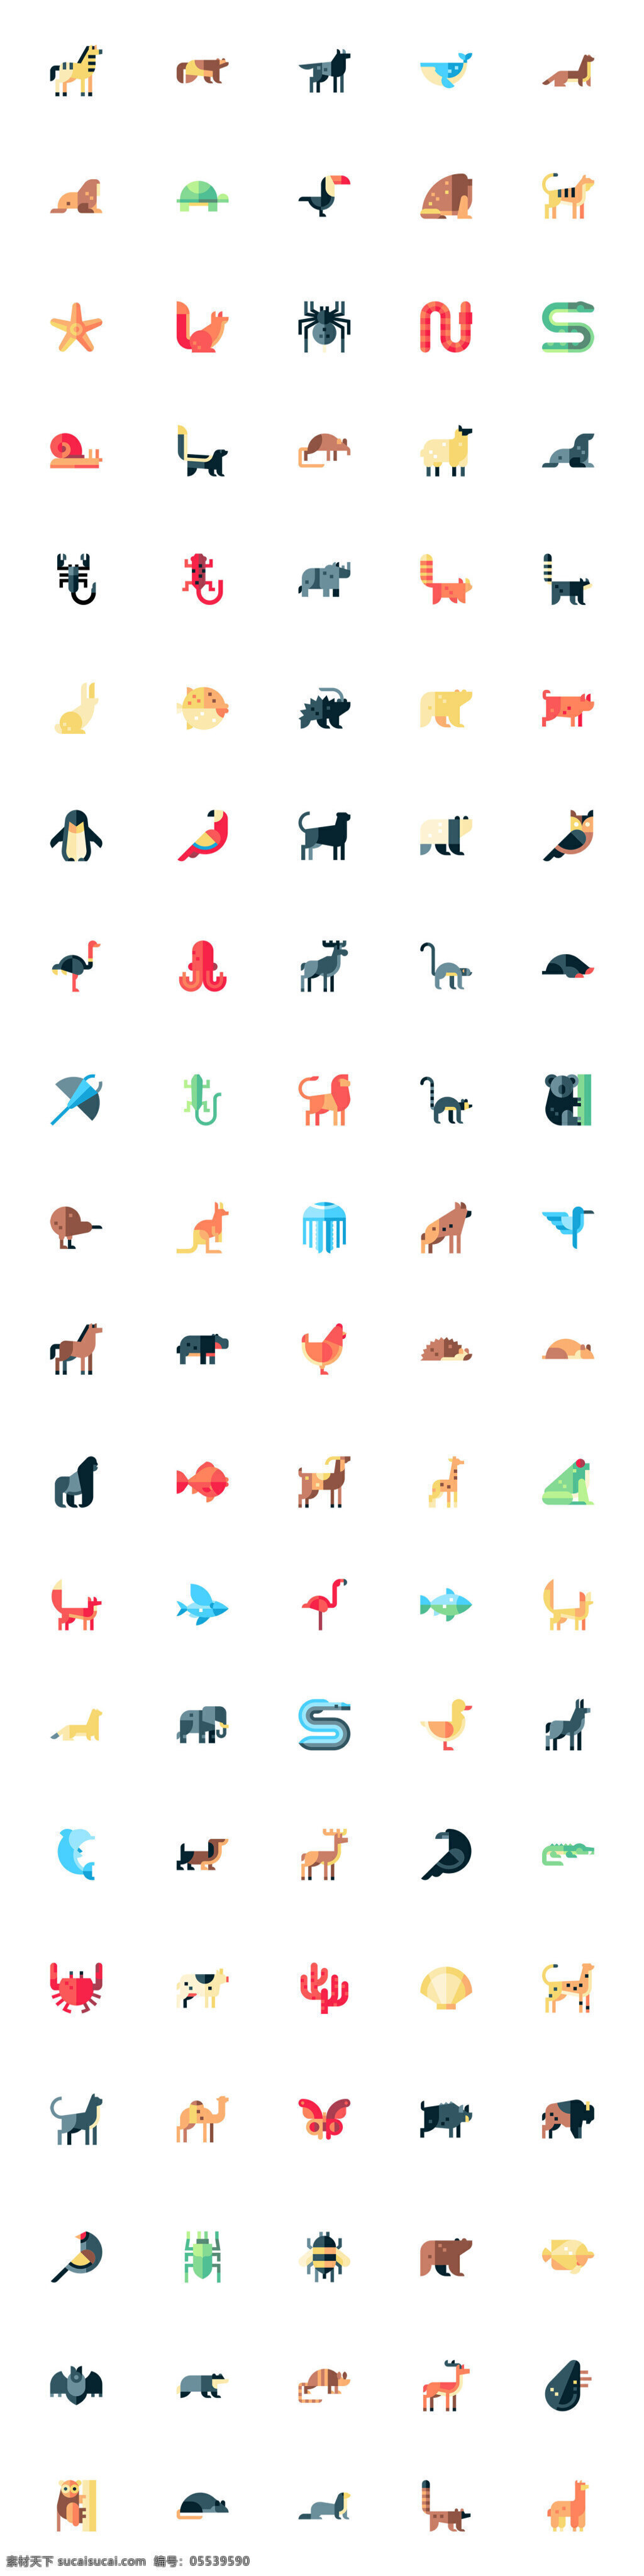 枚 扁平 动物 图标 创意图标 图标下载 图标设计 表情图标 迷你图标 通用图标 网页图标 icon